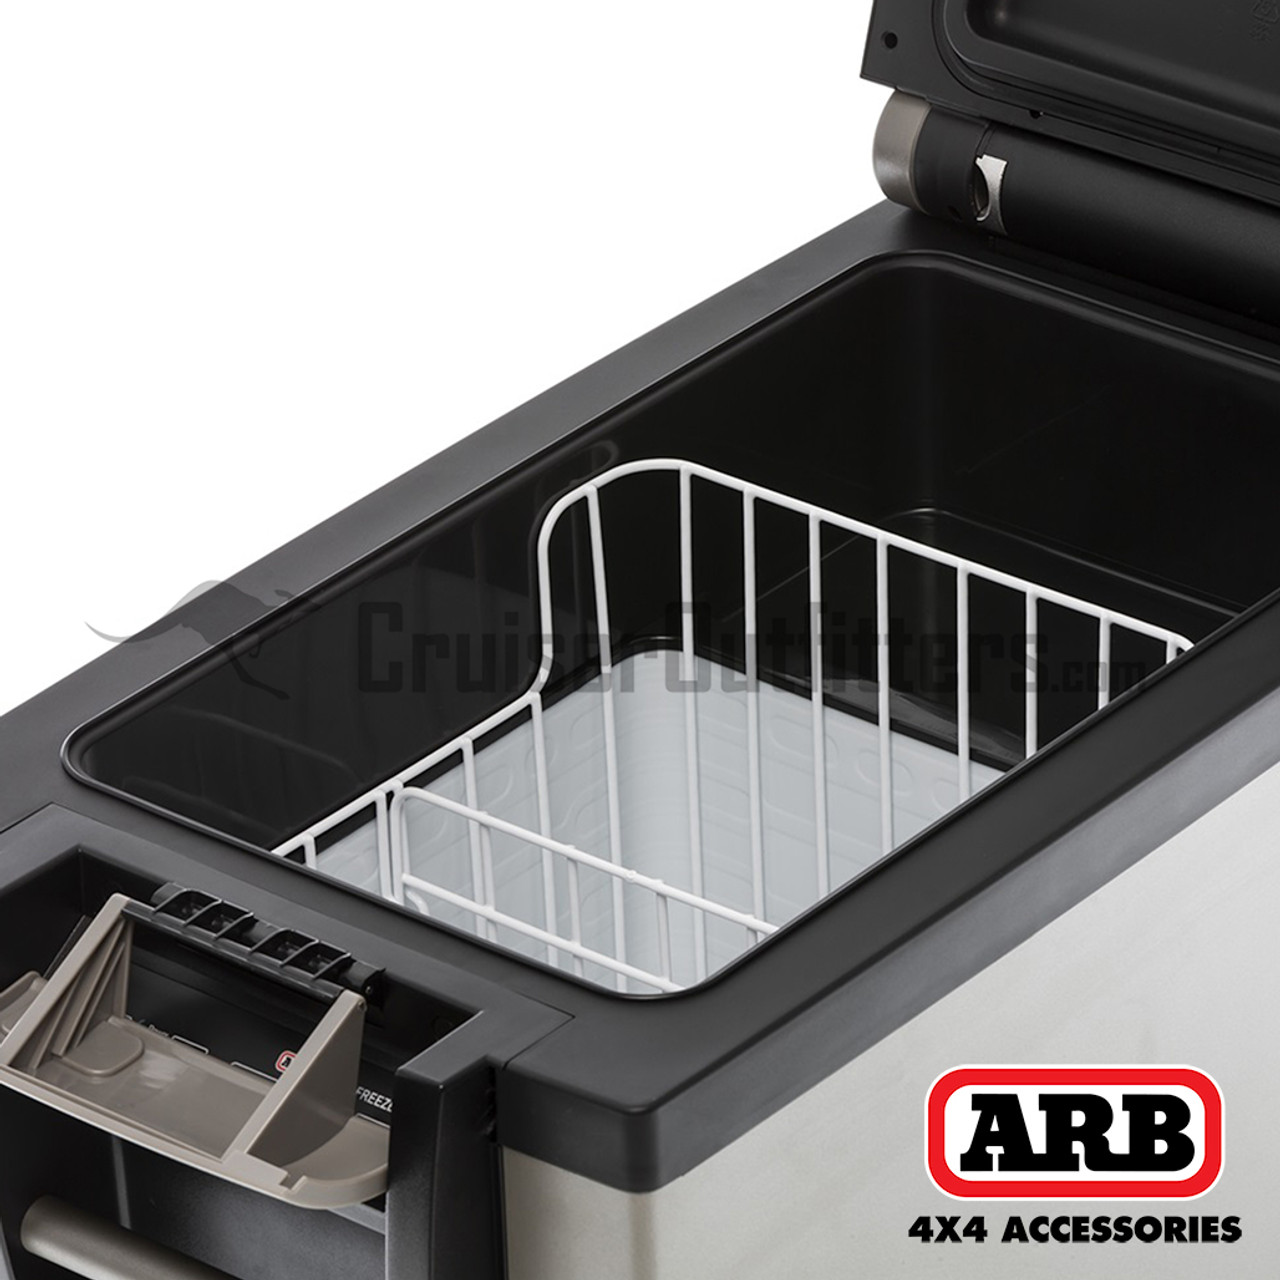 ARB Classic Series II Fridge Freezer - 50QT (ARB10801472)